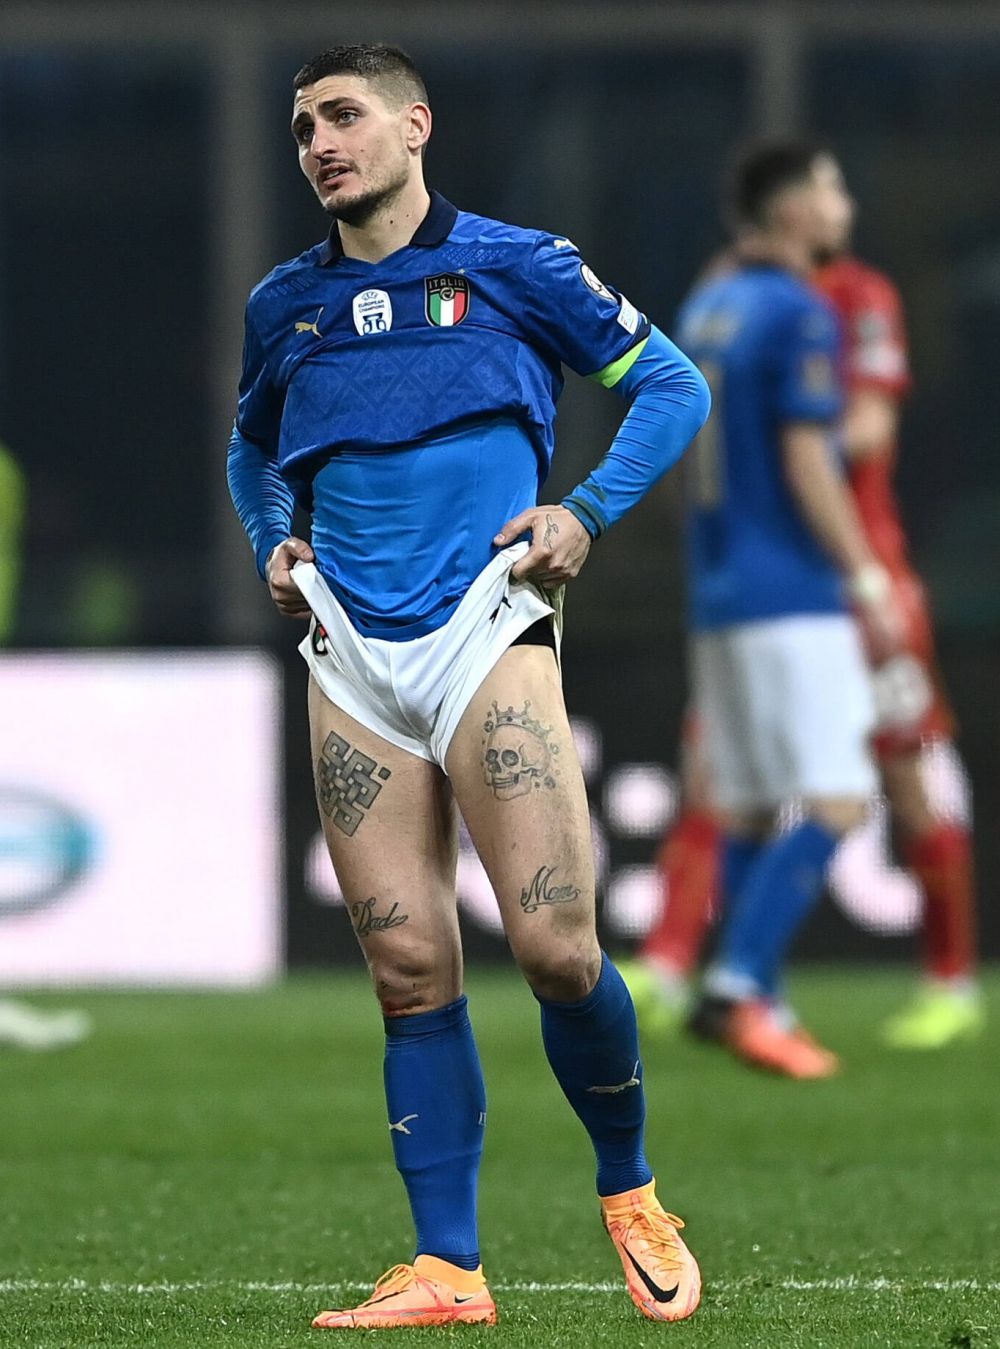 Roberto Mancini, după Italia - Macedonia de Nord 0-1: "Cea mai mare dezamăgire din carieră!". Ce spune despre demisie_9